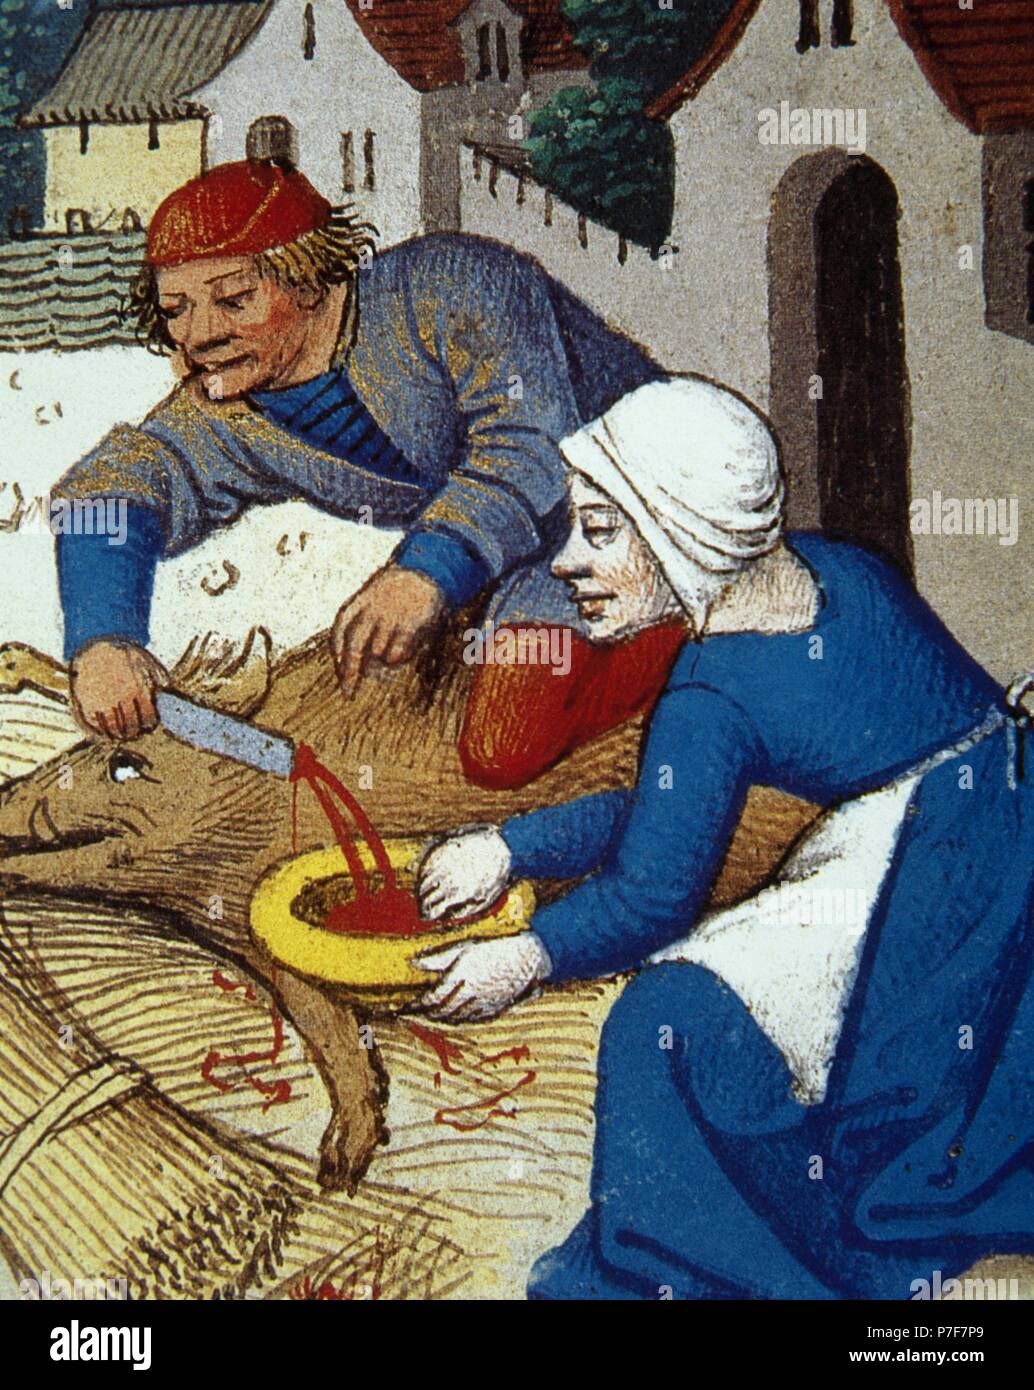 La macellazione del maiale. Miniatura. "Heures de Seguie', del XV secolo. Conde Museum. Castello di Chantilly, Francia. Foto Stock